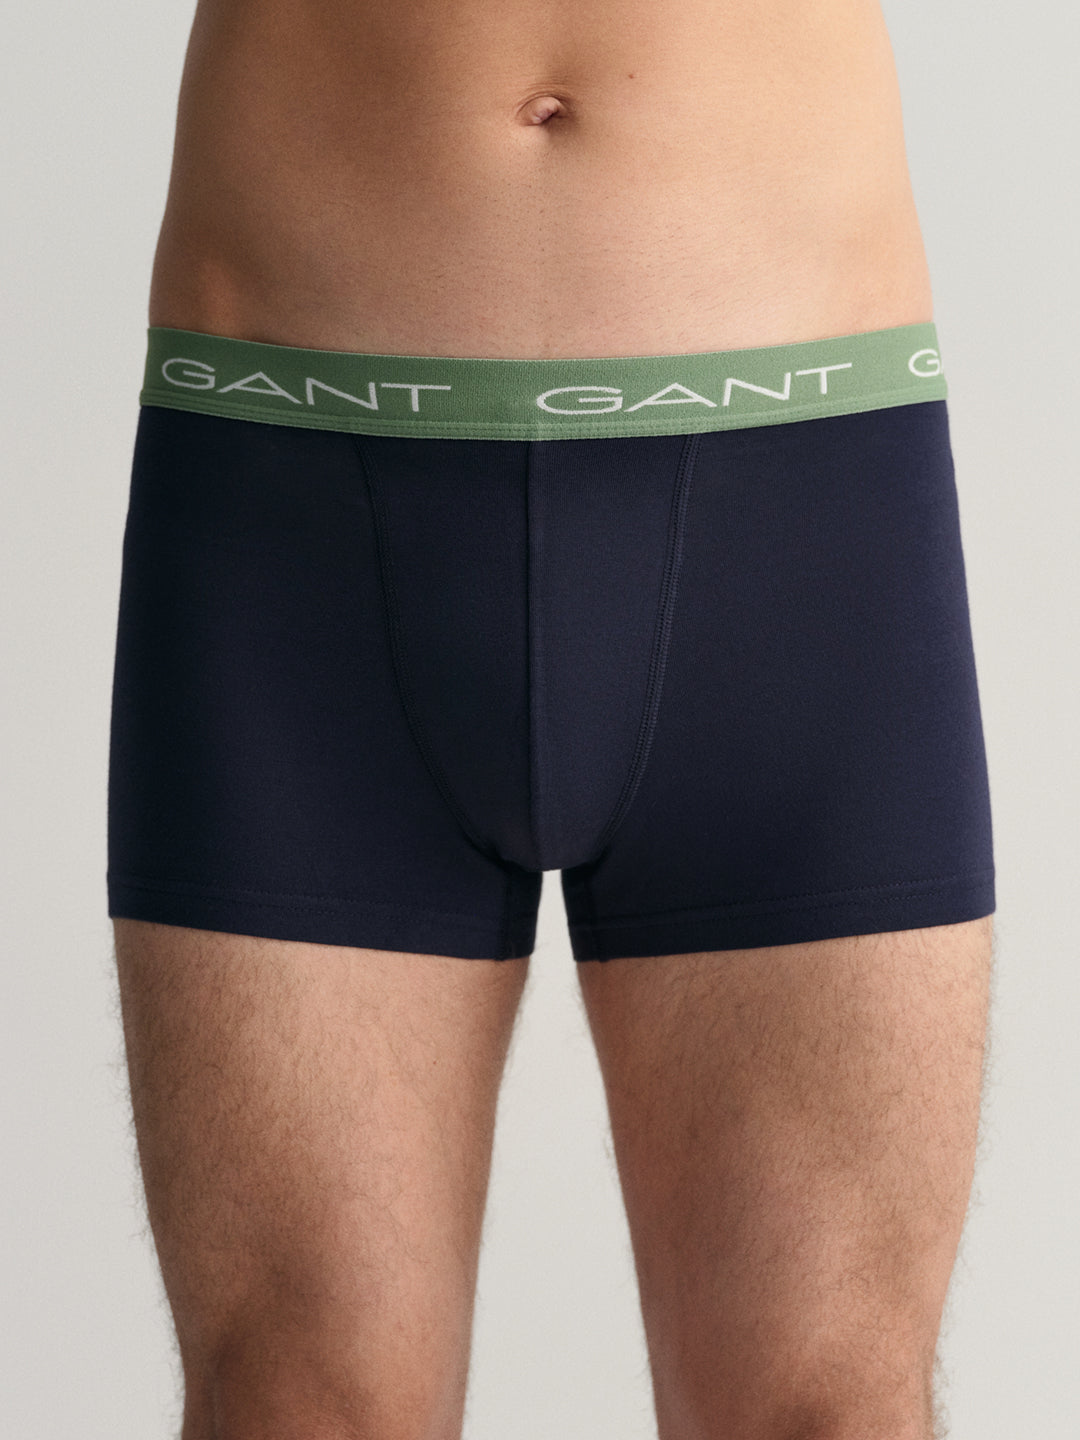 Gant Men Pack Of 3 Brand Logo Printed Trunks 8905241187171